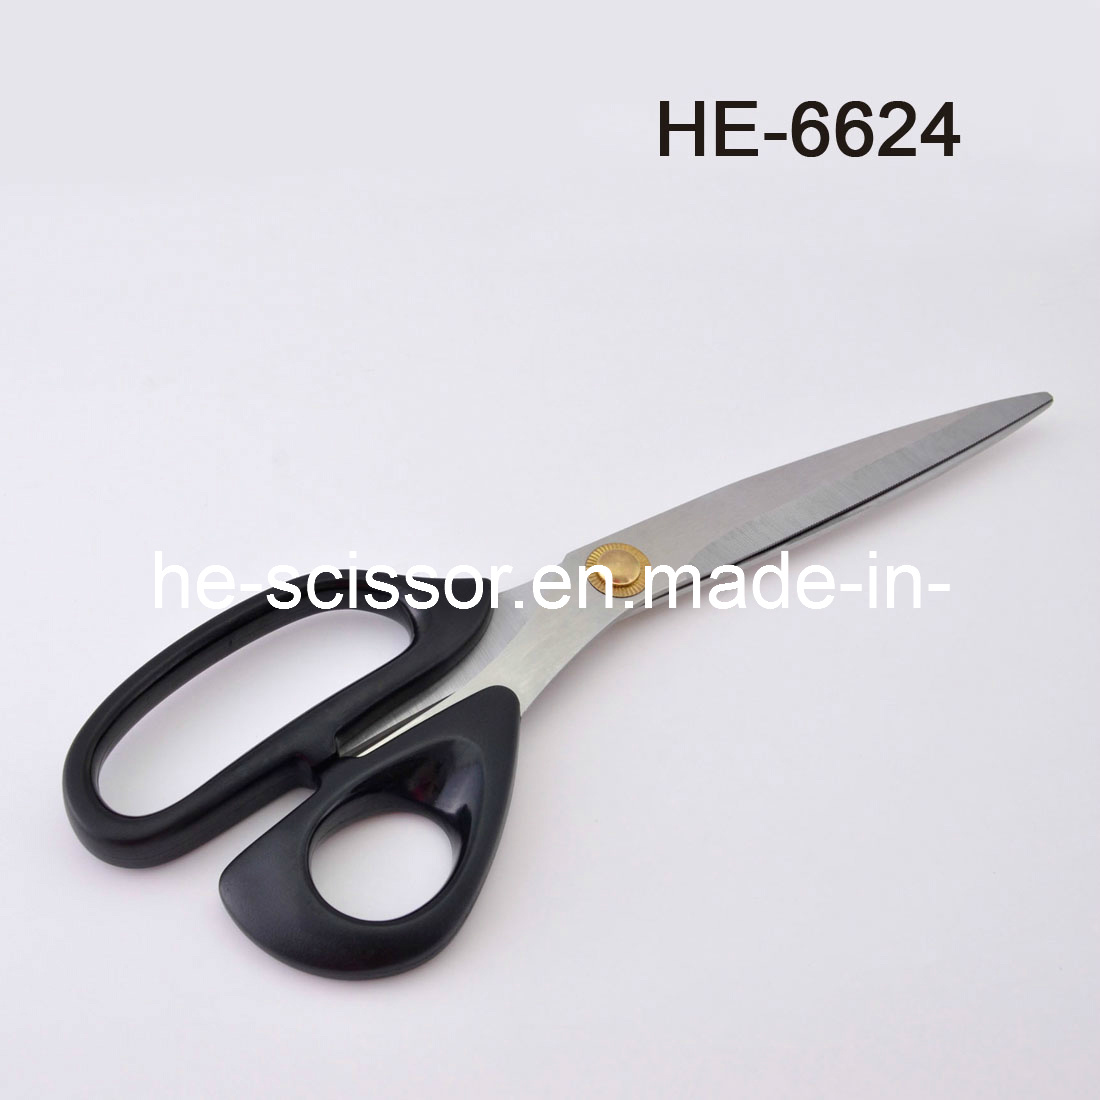 Top Quality Shredding Scissors (HE-6624)